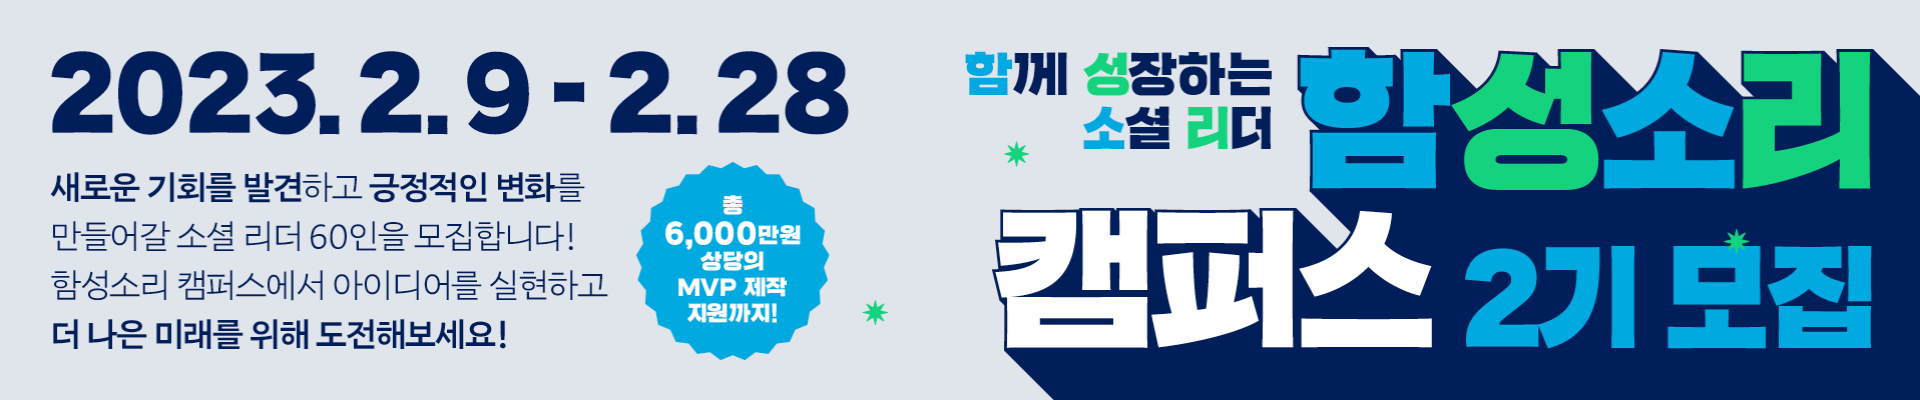 [함께일하는재단] 2023 <함성소리 캠퍼스 2기> 소셜 리더 60인 모집 중!